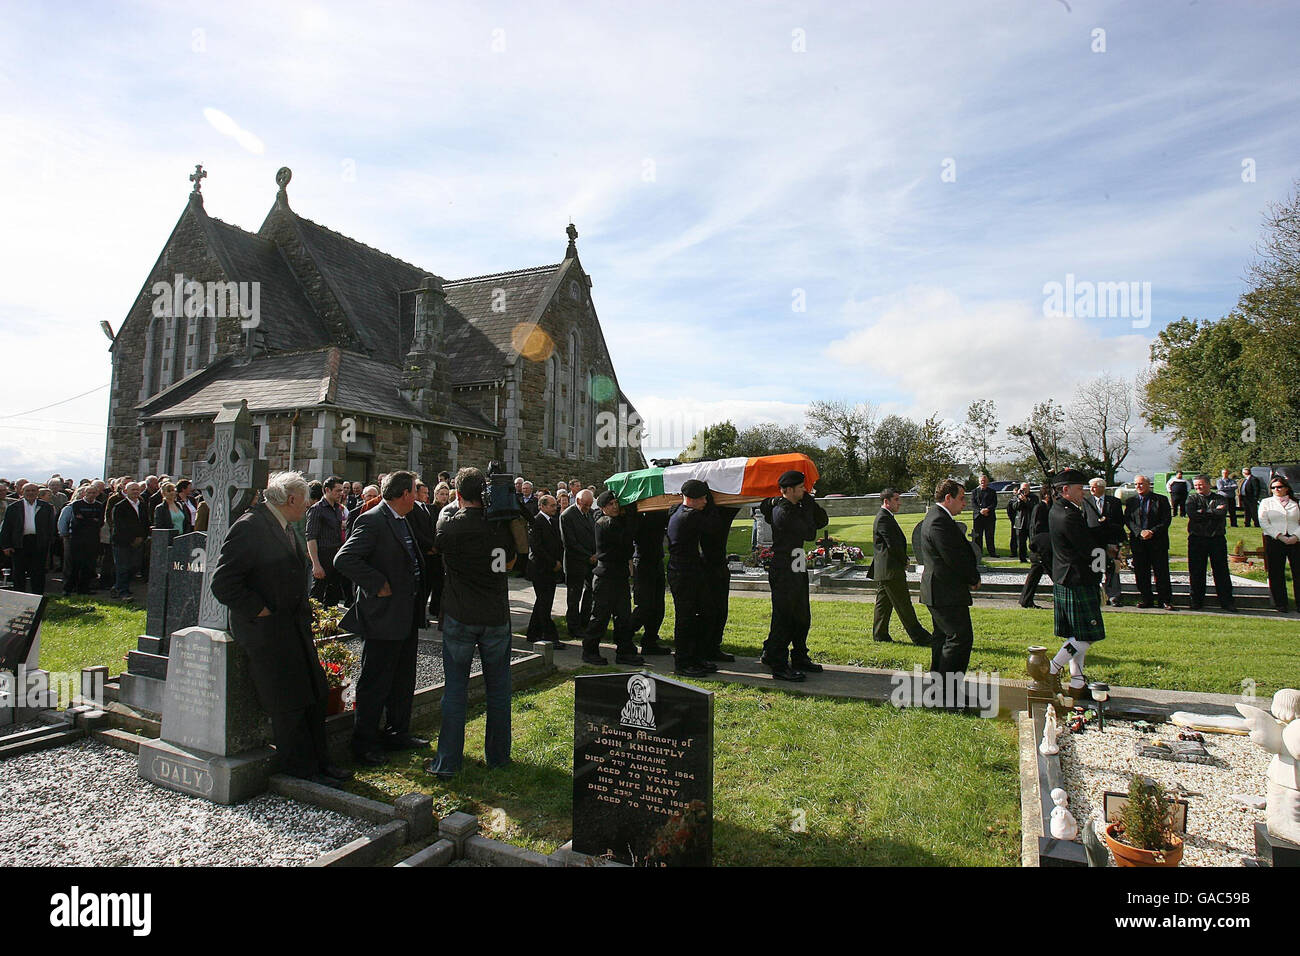 Irischer Unabhängigkeitskrieg der 105-jährige Überlebende Dan'Bally'Keating wird in Kiltallagh Cemetry Castlemaine Co.Kerry begraben. Stockfoto